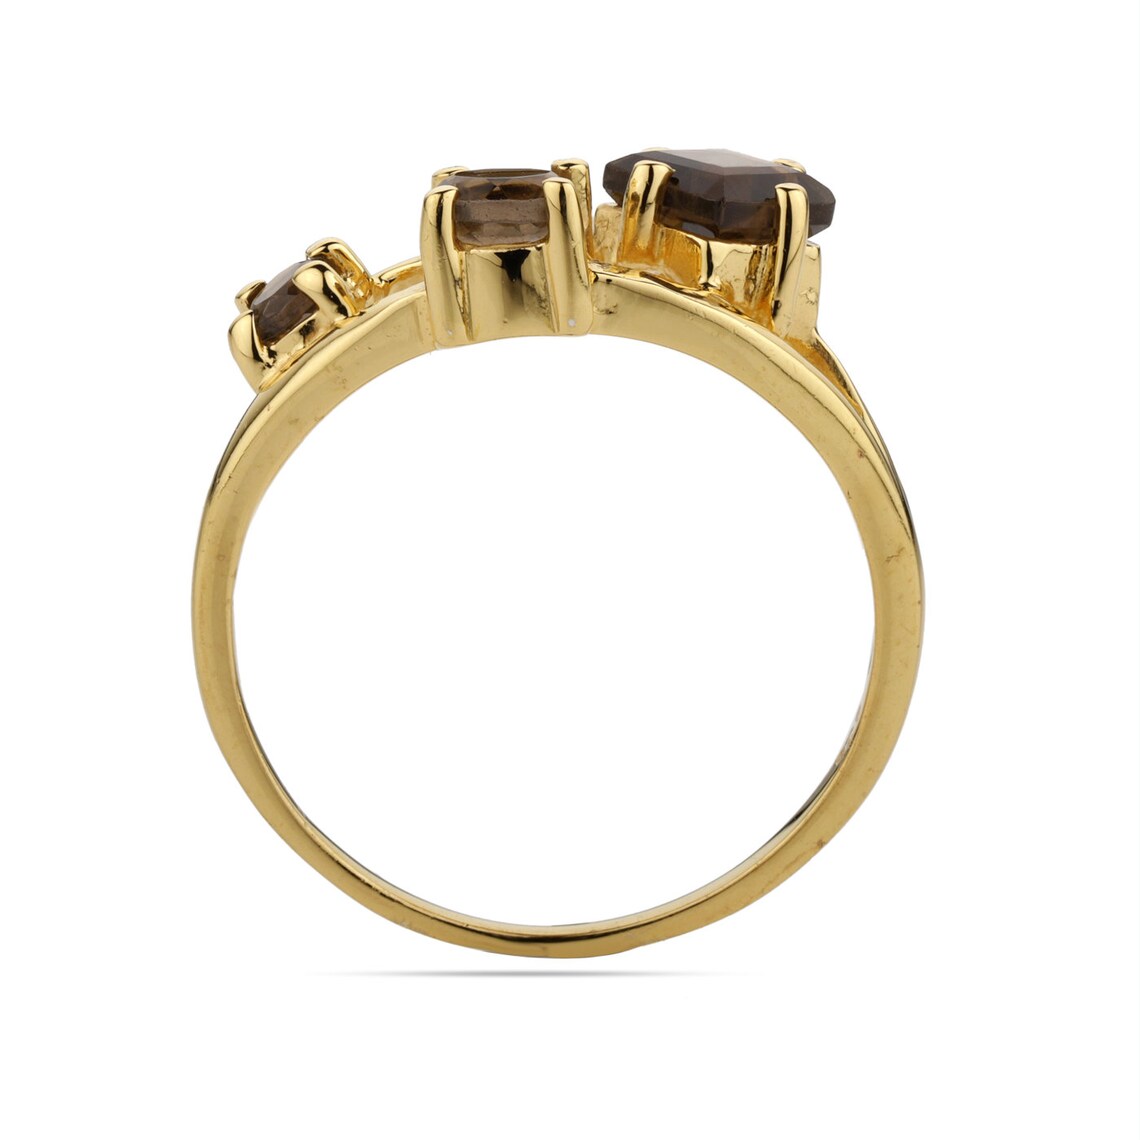 Unique Smoky Quartz Ring-Smoky Quartz Cluster Ring For Gift-Smoky Quartz Ring - Gold Smoky Ring-Smoky Ring For Love